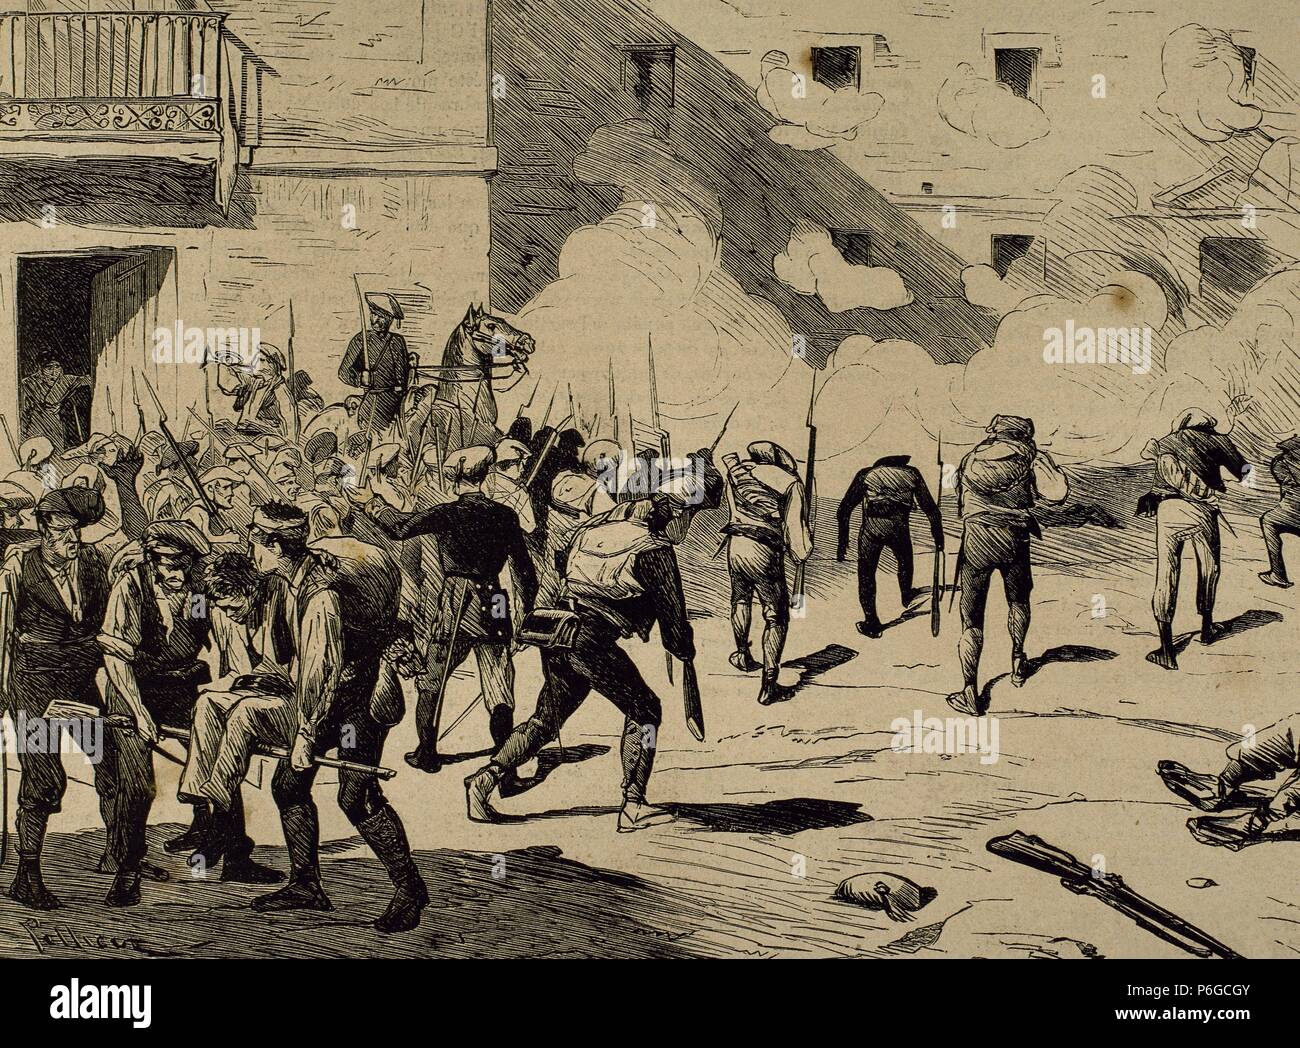 Spagna. Terza guerra carlista. Nel giugno 1872 il generale carlista Joan Francesch ho Serret (1833-1872) entra in Reus (Catalogna) con 400 soldati e sorprendente il presidio liberale. Egli è morto in combattimento. Incisione di Pellicer in 'La Ilustracion Espan ola y Americana ", 1872. Foto Stock